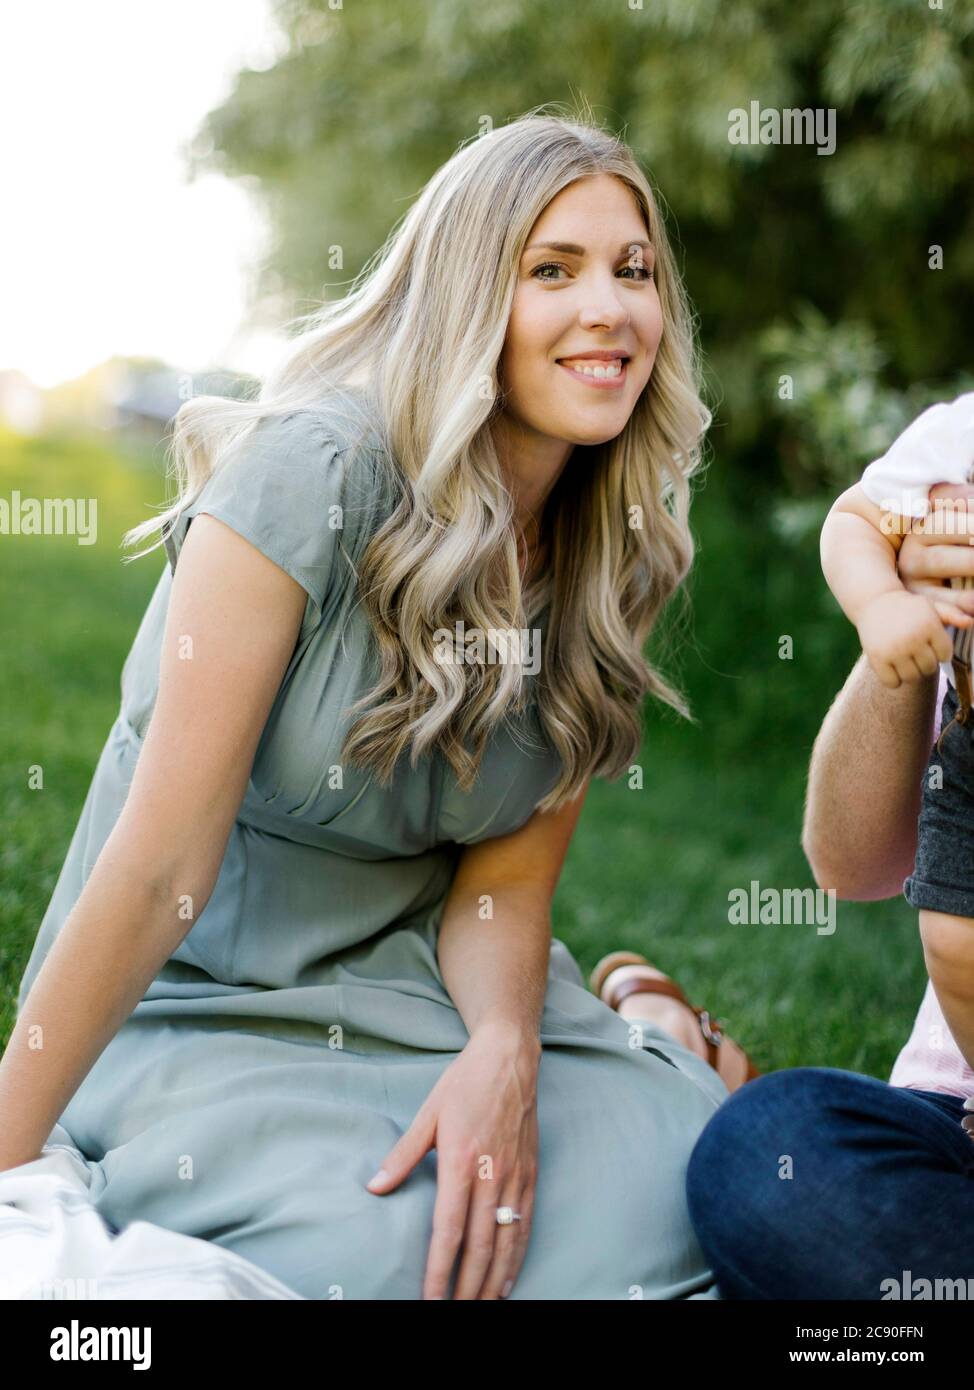 Outdoor-Porträt der lächelnden Frau sitzt o Gras mit ihr Familie in der Nähe Stockfoto